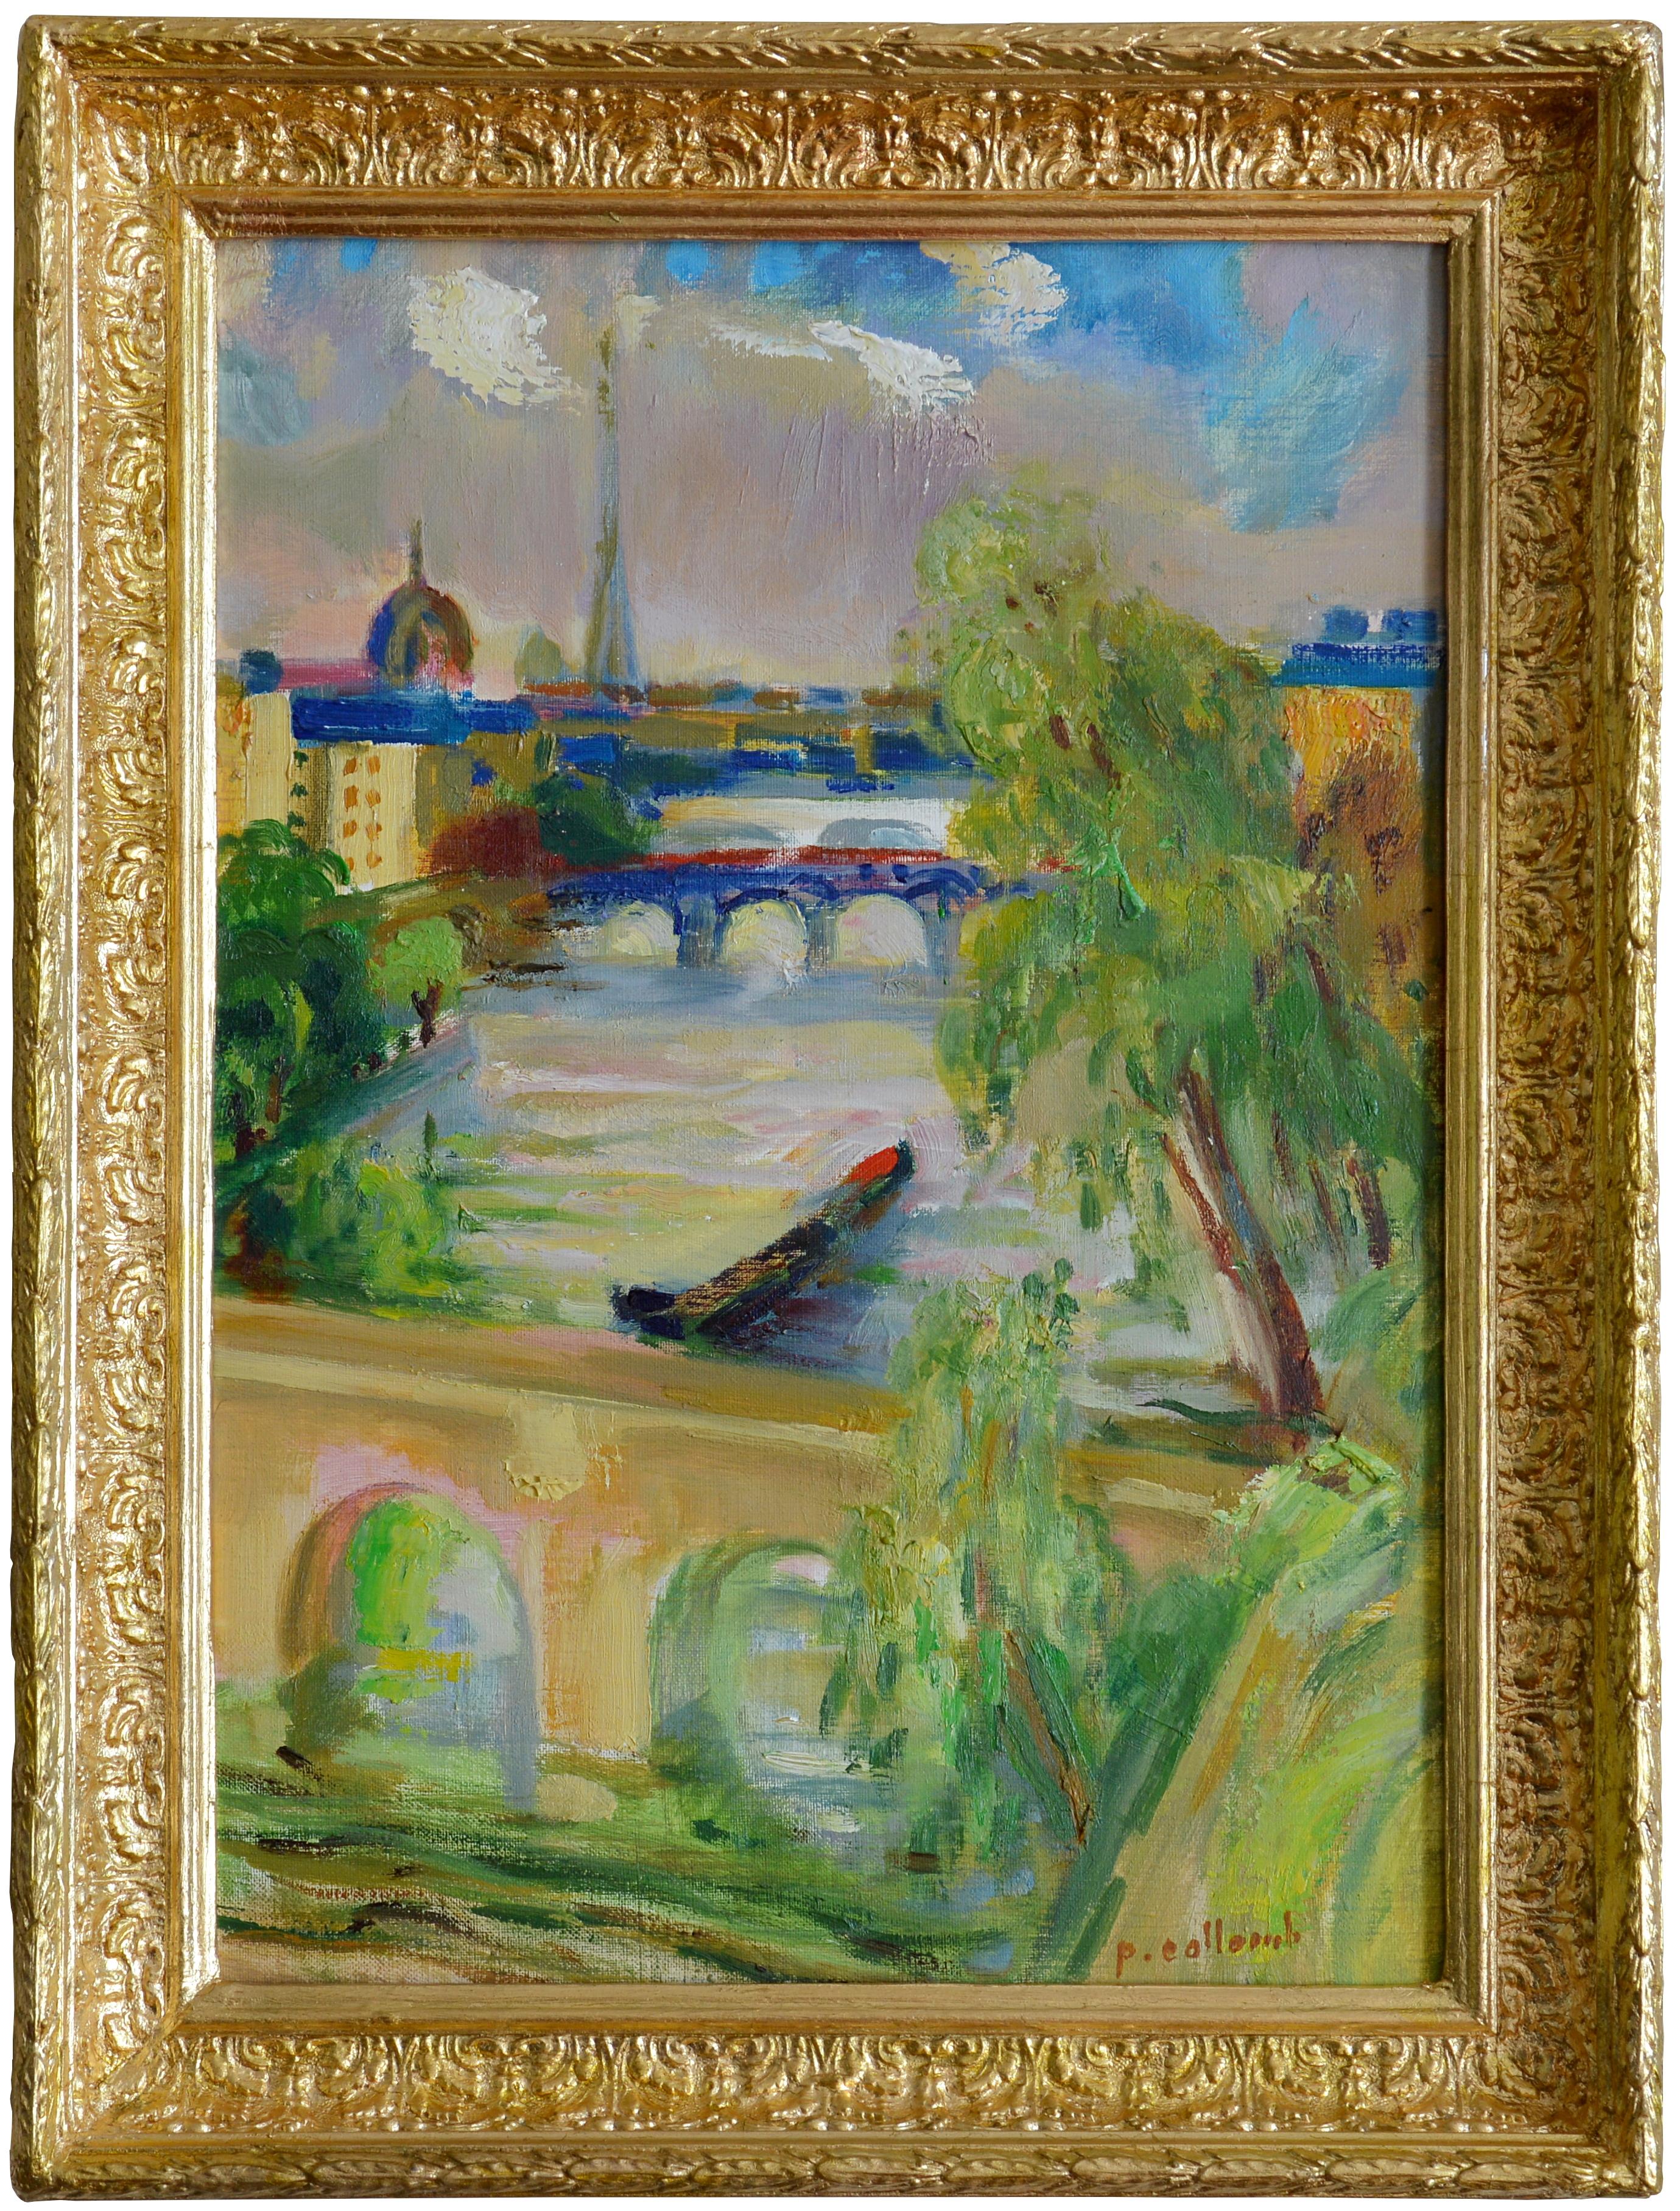 Paul Collomb, Paris, Eiffelturm, Invalides, Die schöne Aussicht, Öl auf Leinwand